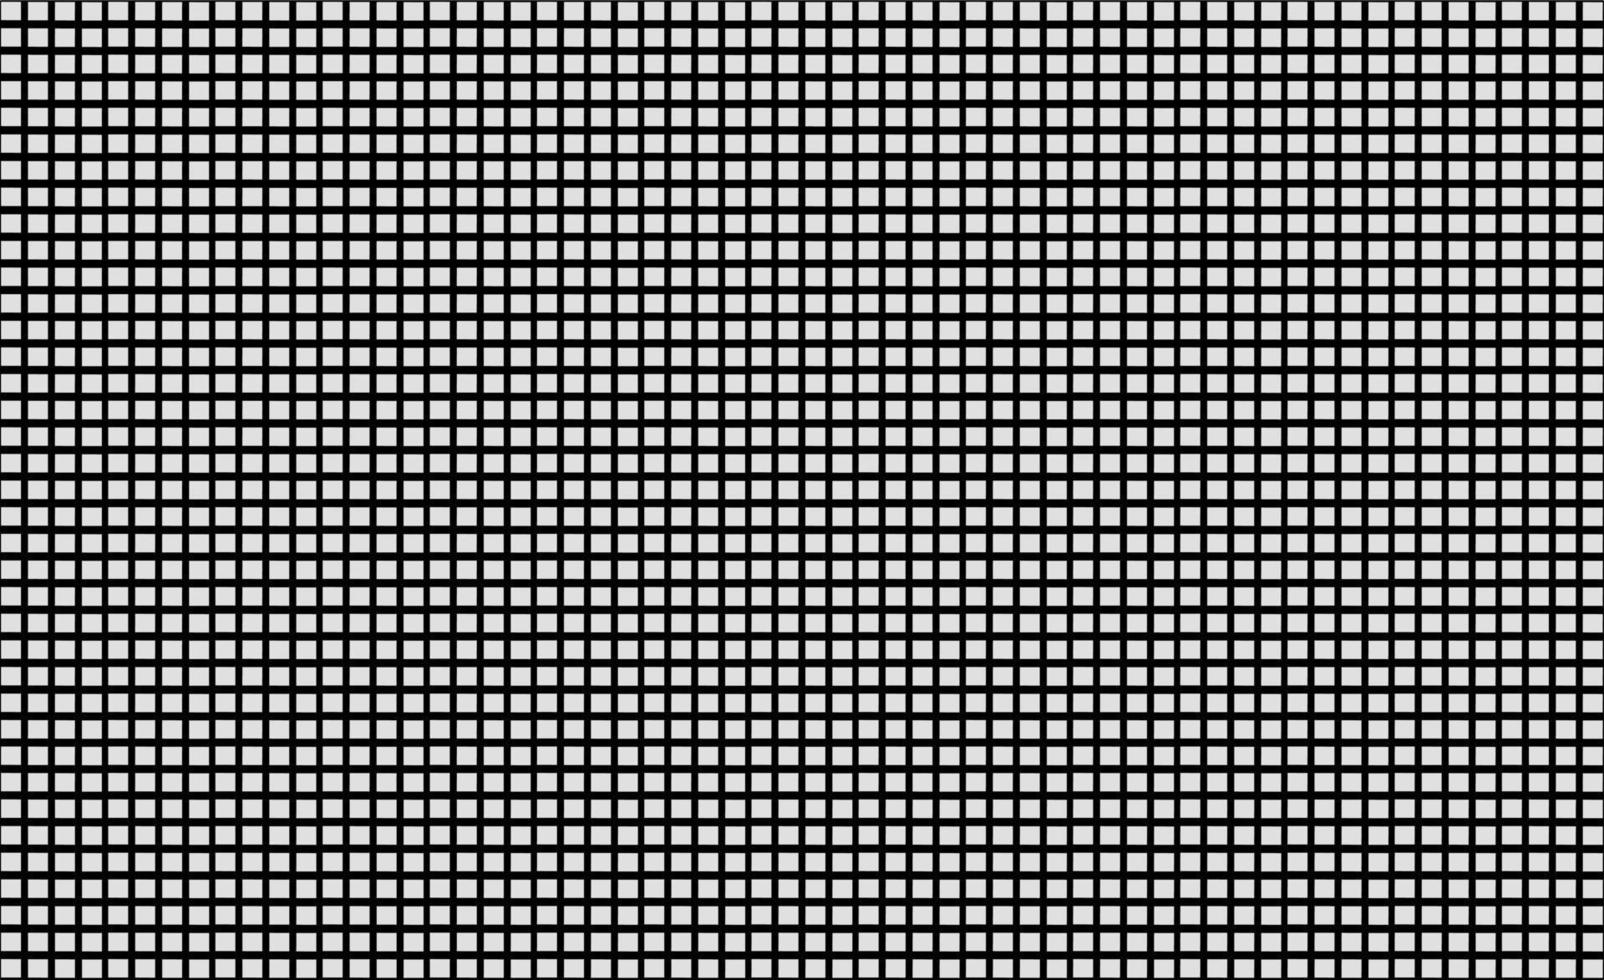 prick rgb -TV -bakgrund. svart och vit färg, används för bakgrundsdesign för videoväggsskärm vektor